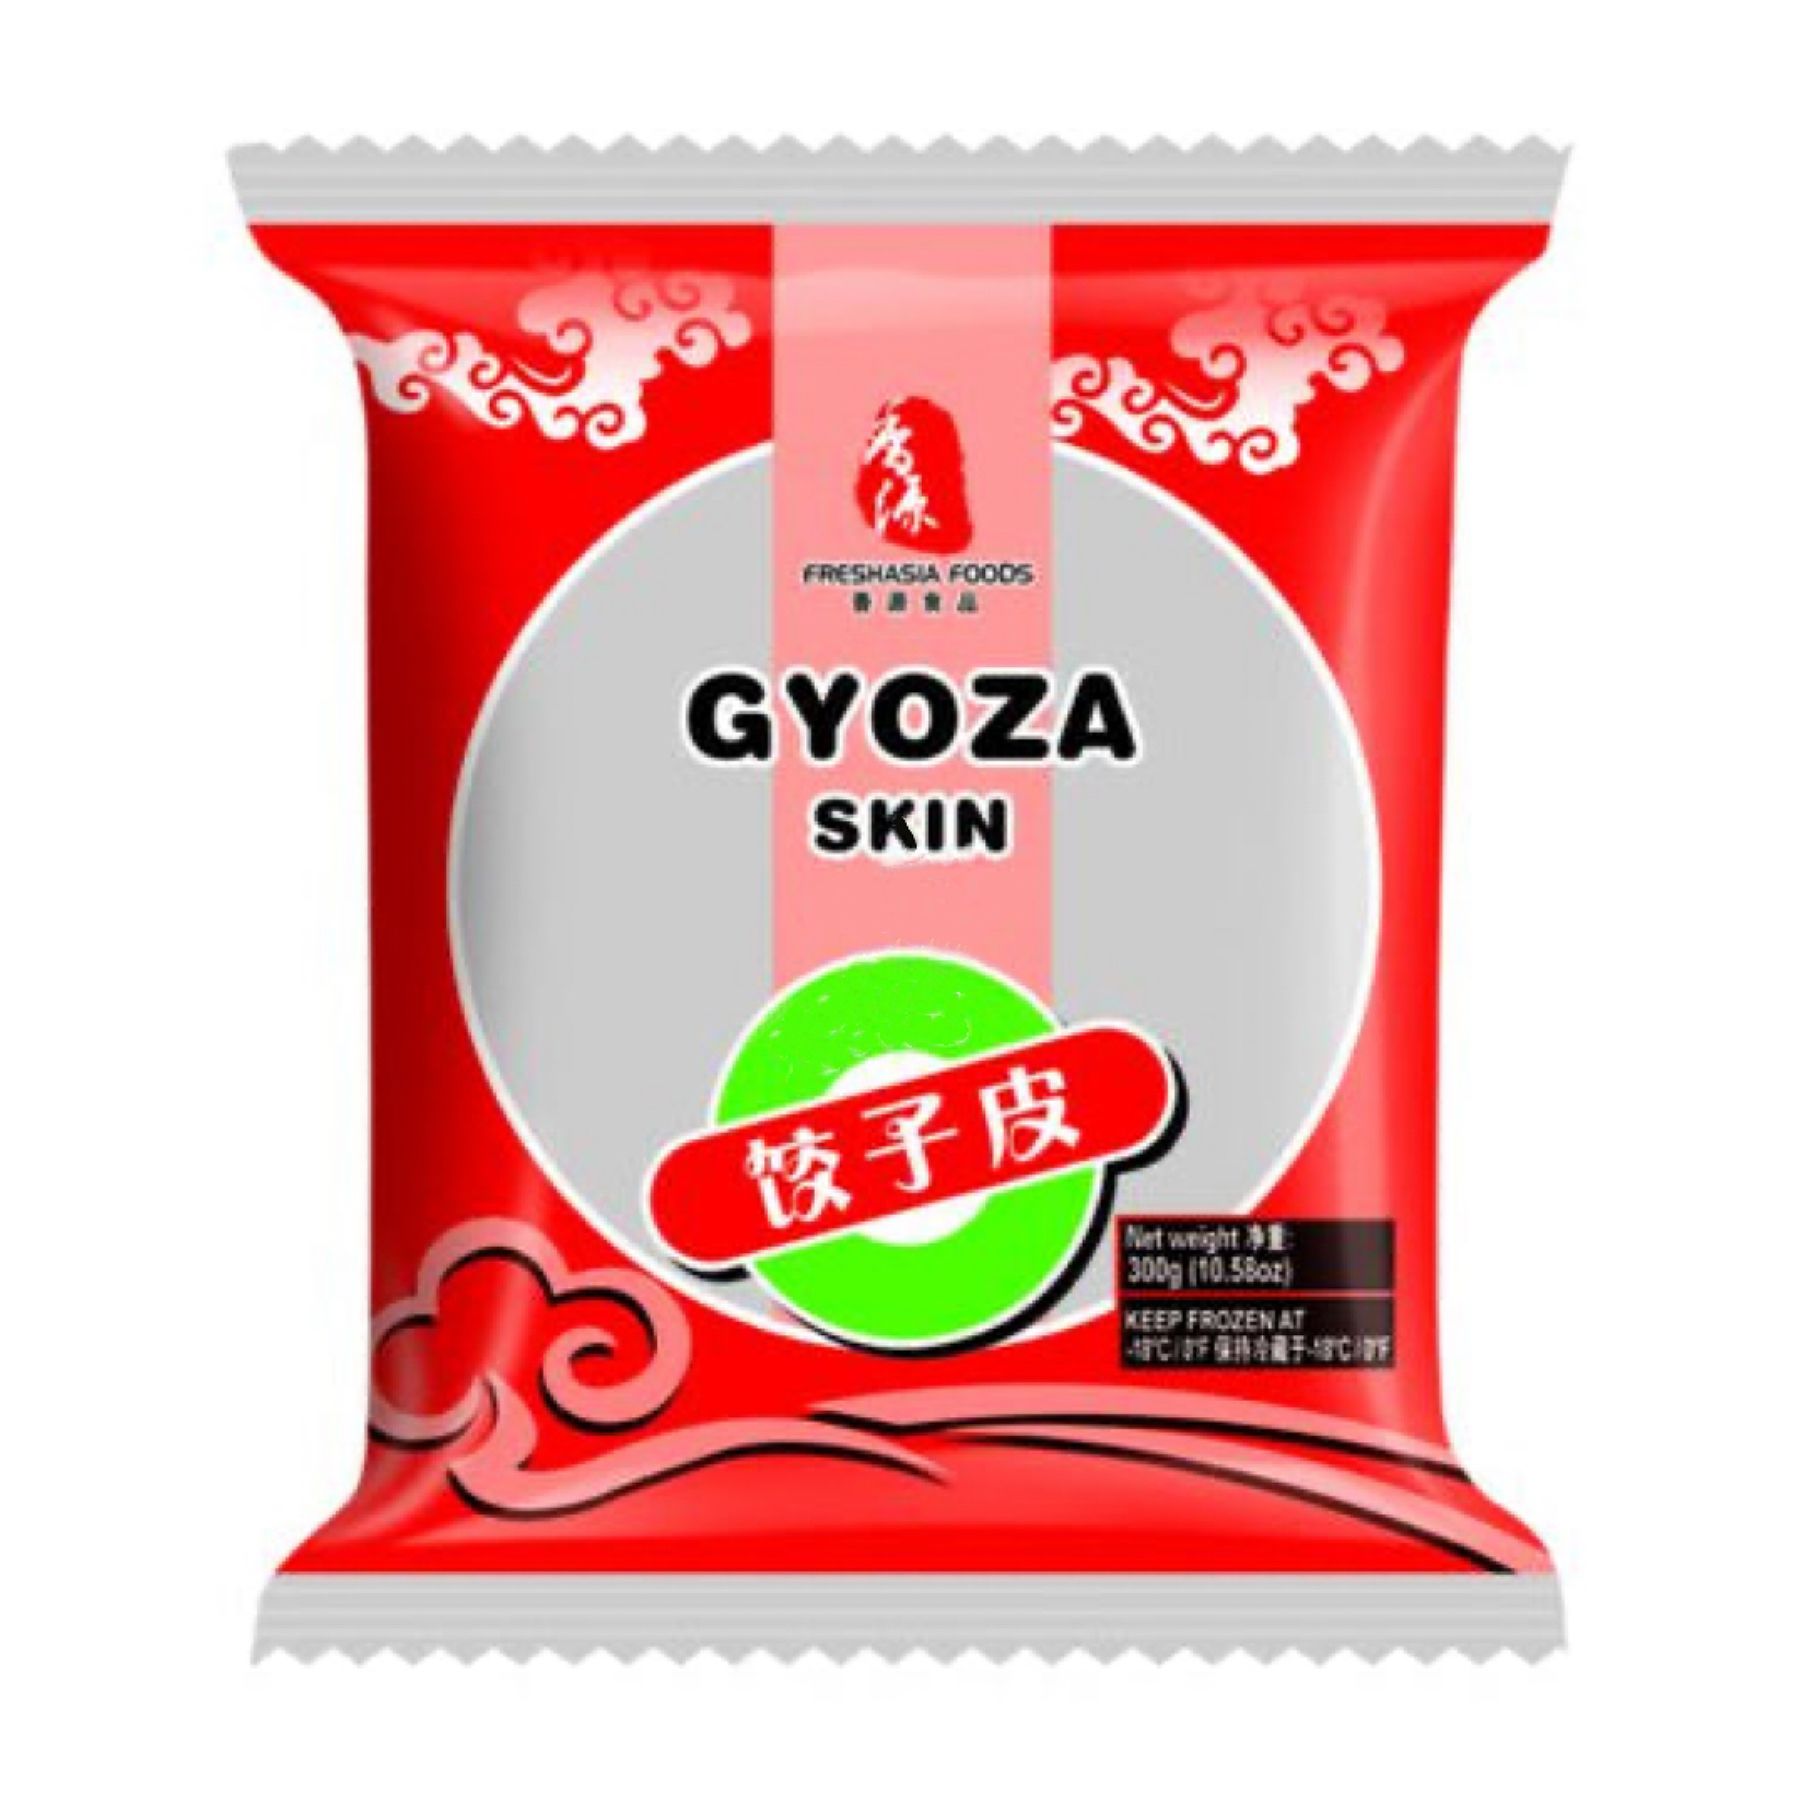 FRESHASIA Gyoza Skin (Verpackung) 300g